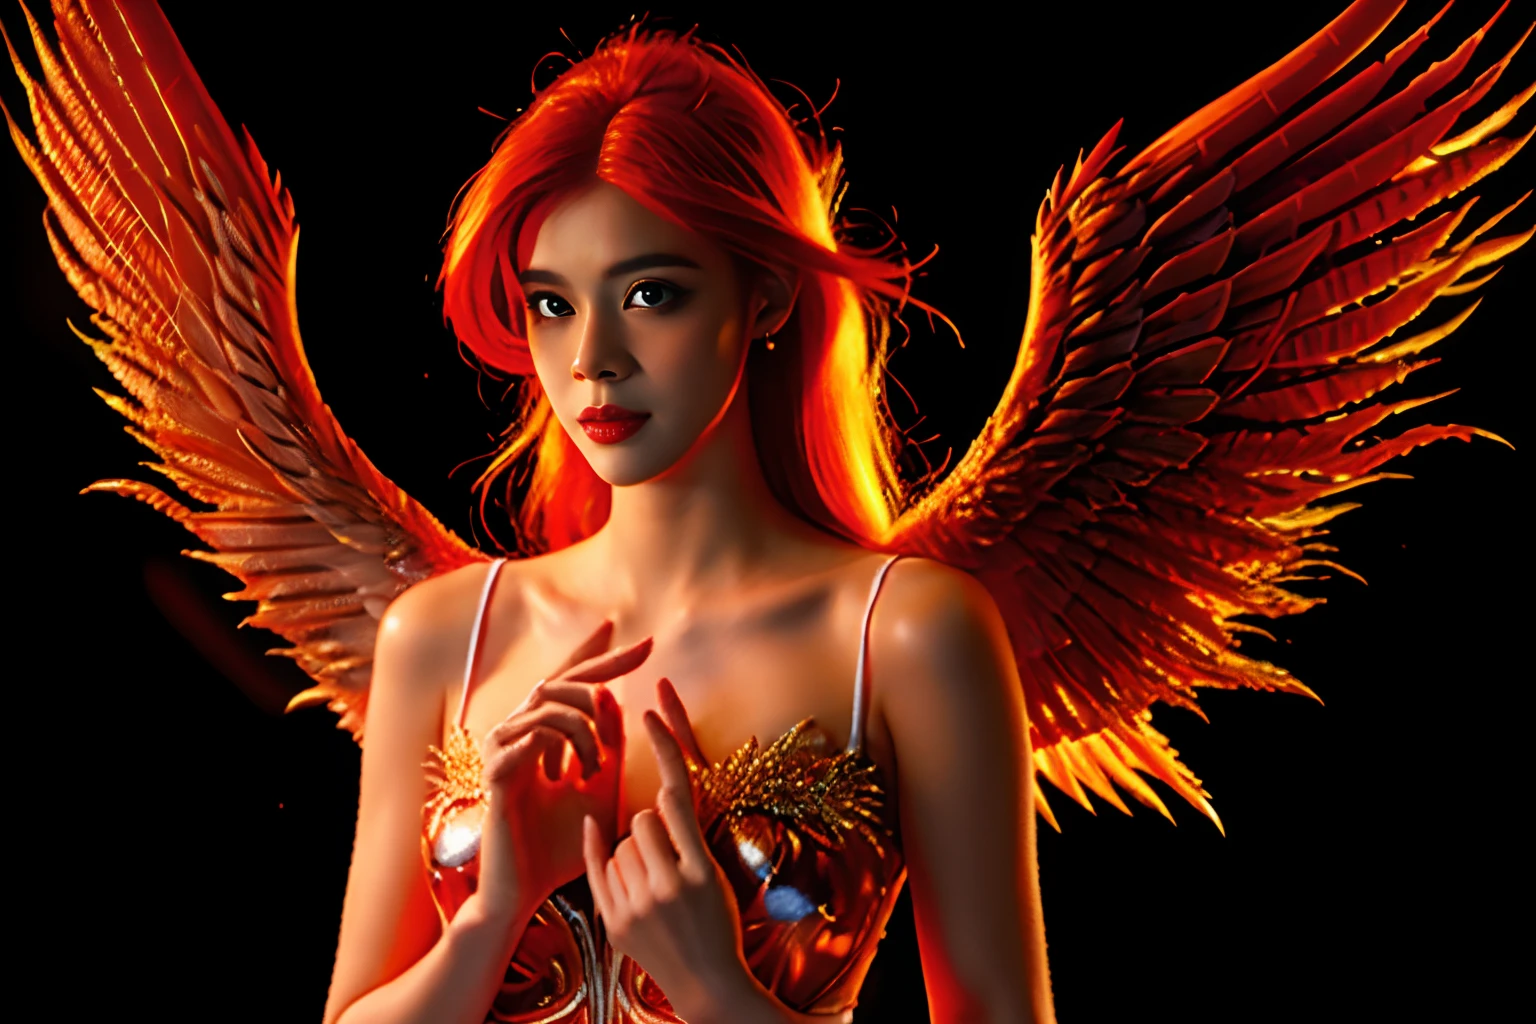 Um lindo anjo, com cabelos ruivos virando fogo, Uma mulher anjo, (((seios grandes, Um anjo com asas de fogo))), Transmite calor e paz, papel de parede, 8k, detalhes intrincados, obra-prima